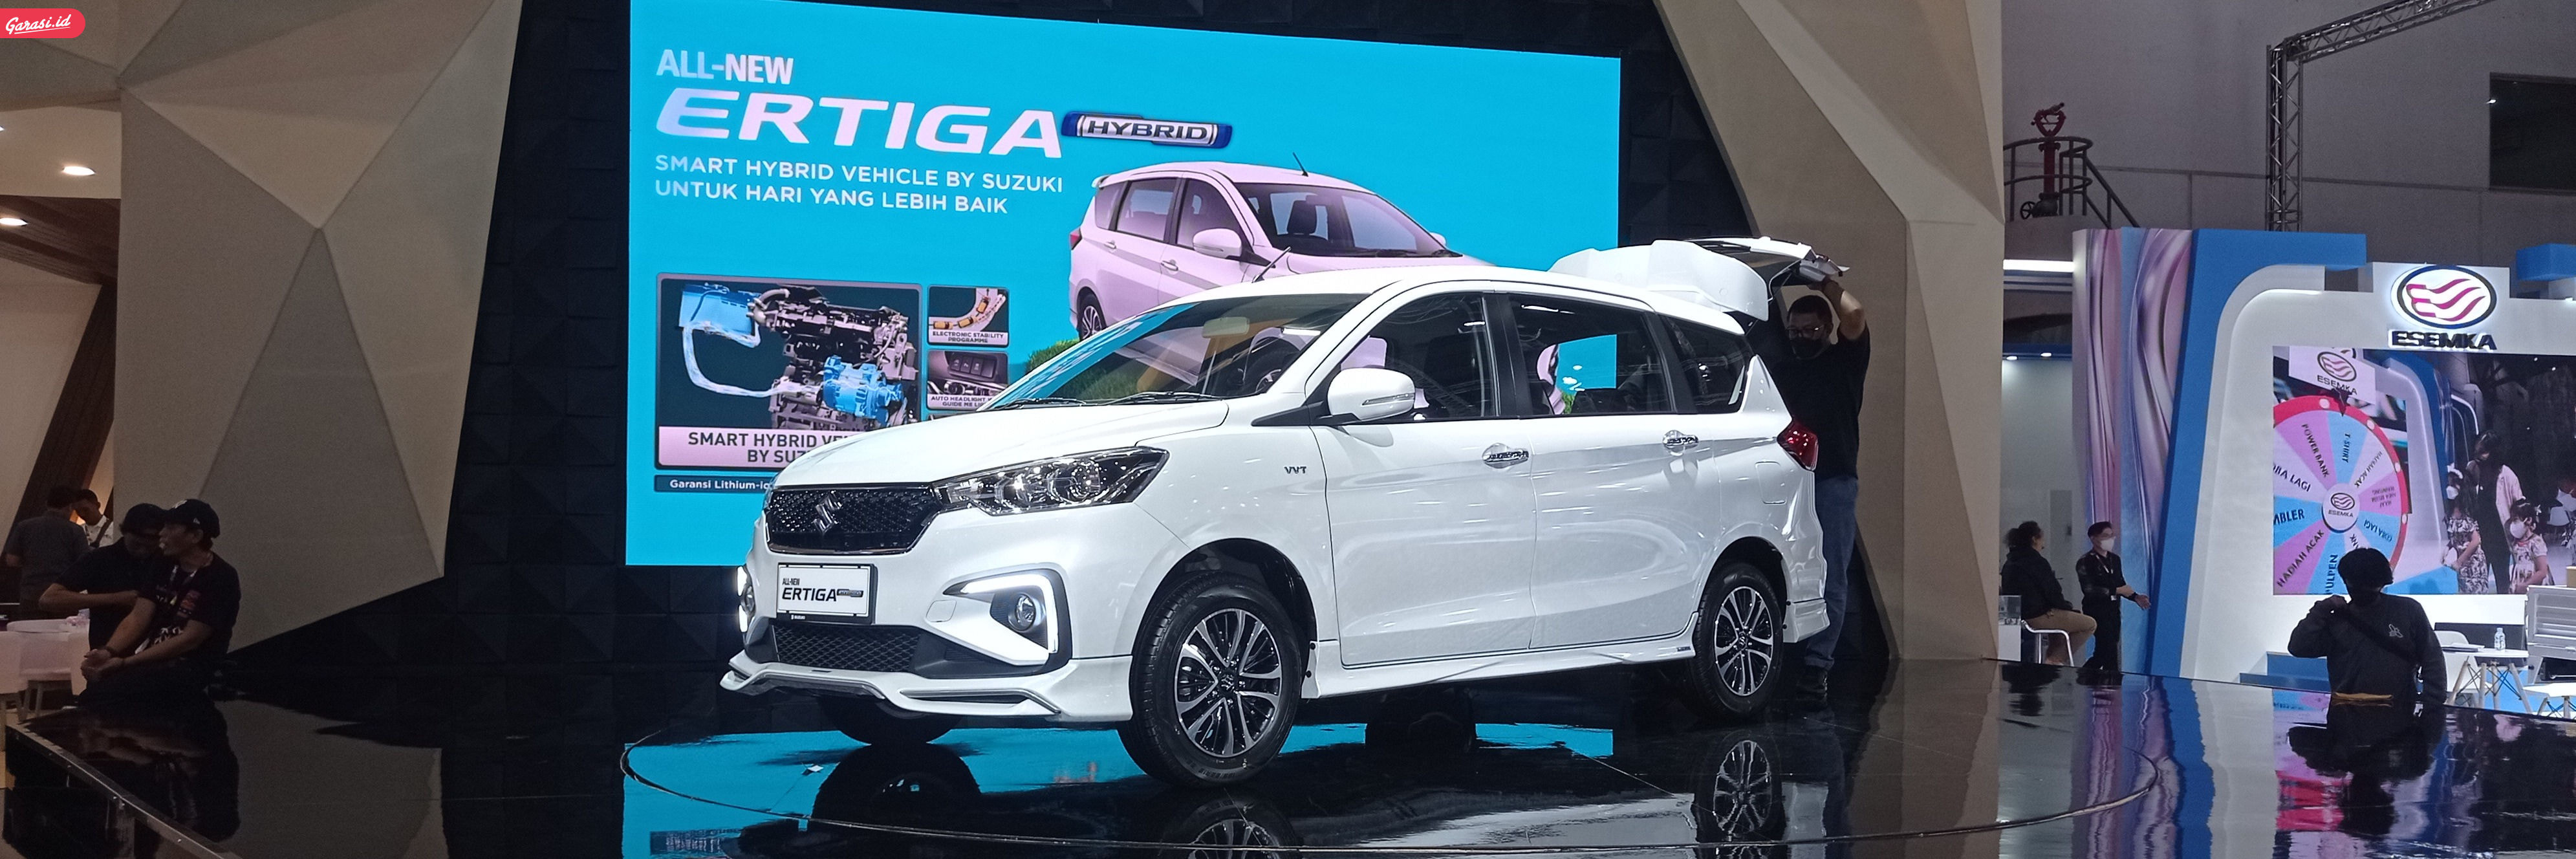 Brand Besar Bersaing Menjadi Pelopor Yang Memperkenalkan Mobil Hybrid Di Indonesia